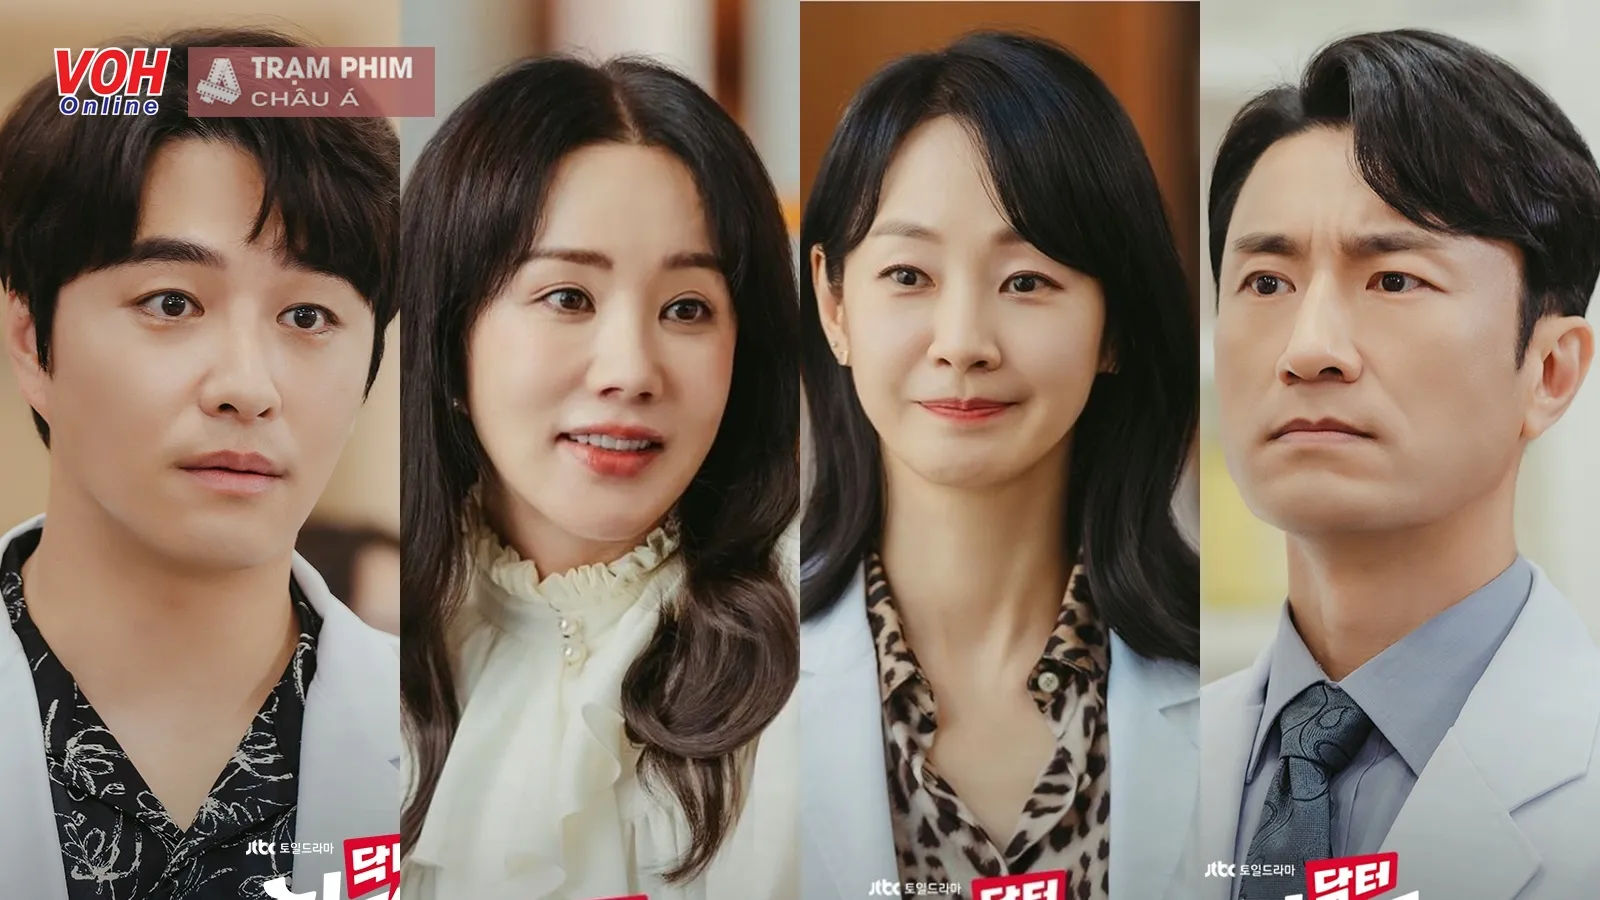 Bác sĩ Cha diễn viên: Kim Byung Chul, Uhm Jung Hwa bảo chứng rating và dàn sao trẻ hứa hẹn